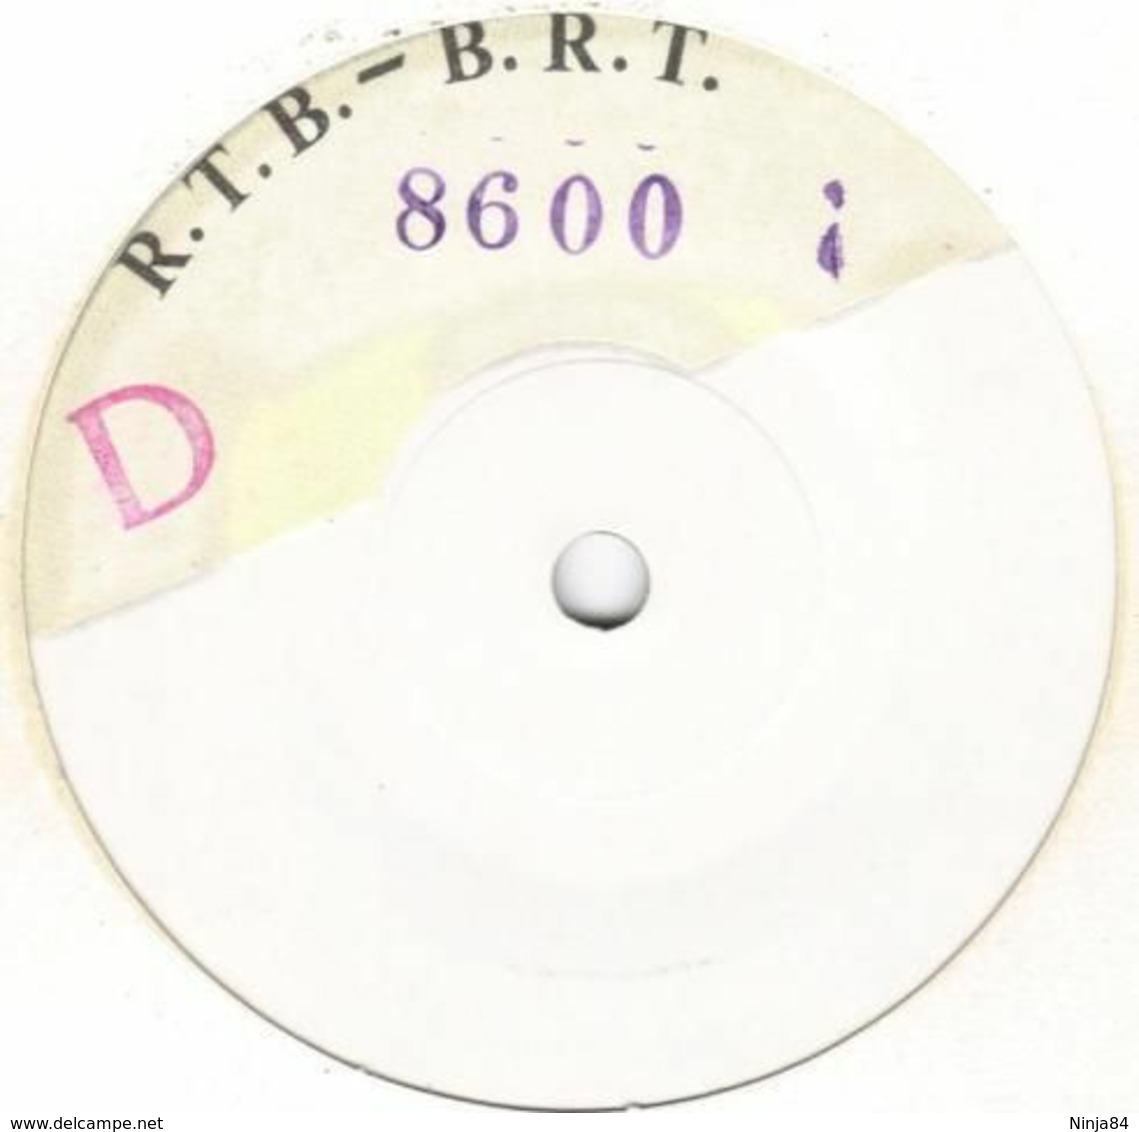 SP 45 RPM (7")  Pierrette Bruno  "  Non  "  Test Pressing - Collectors